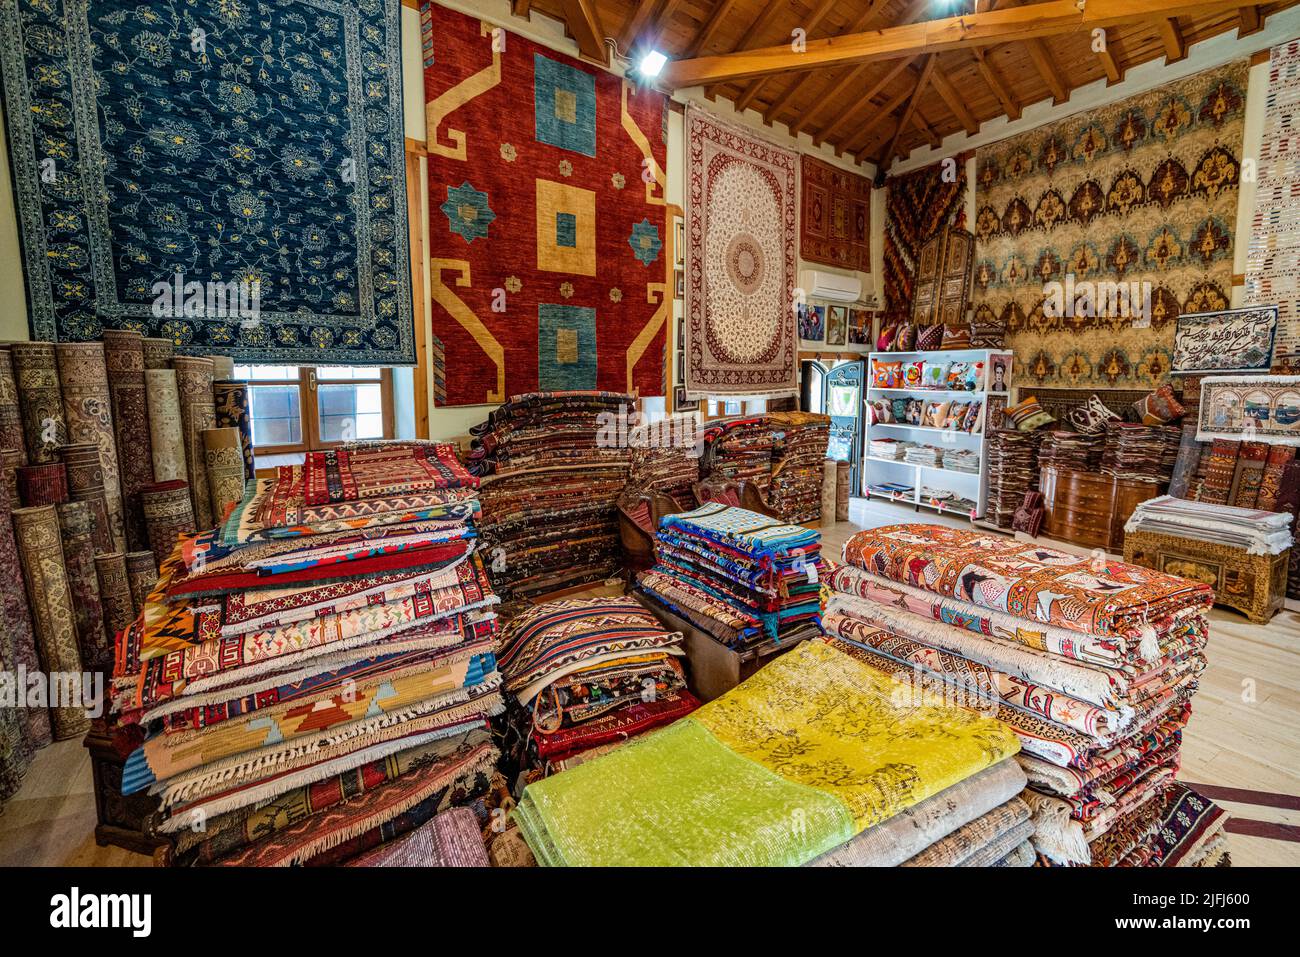 Grandes piles de tapis orientaux dans un magasin. Marché aux tapis colorés. Turquie Banque D'Images